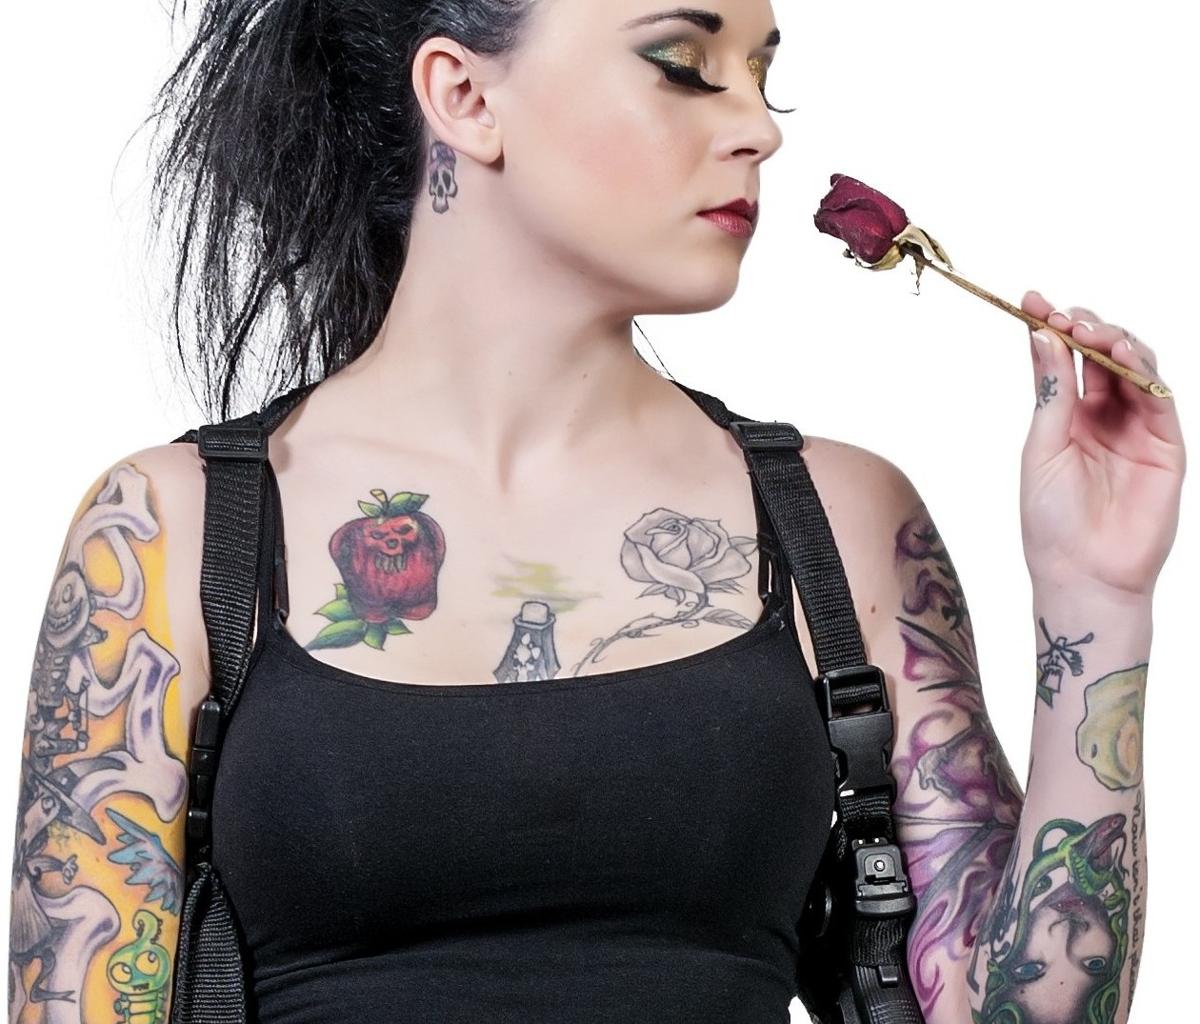 rose vine tattoos on arm